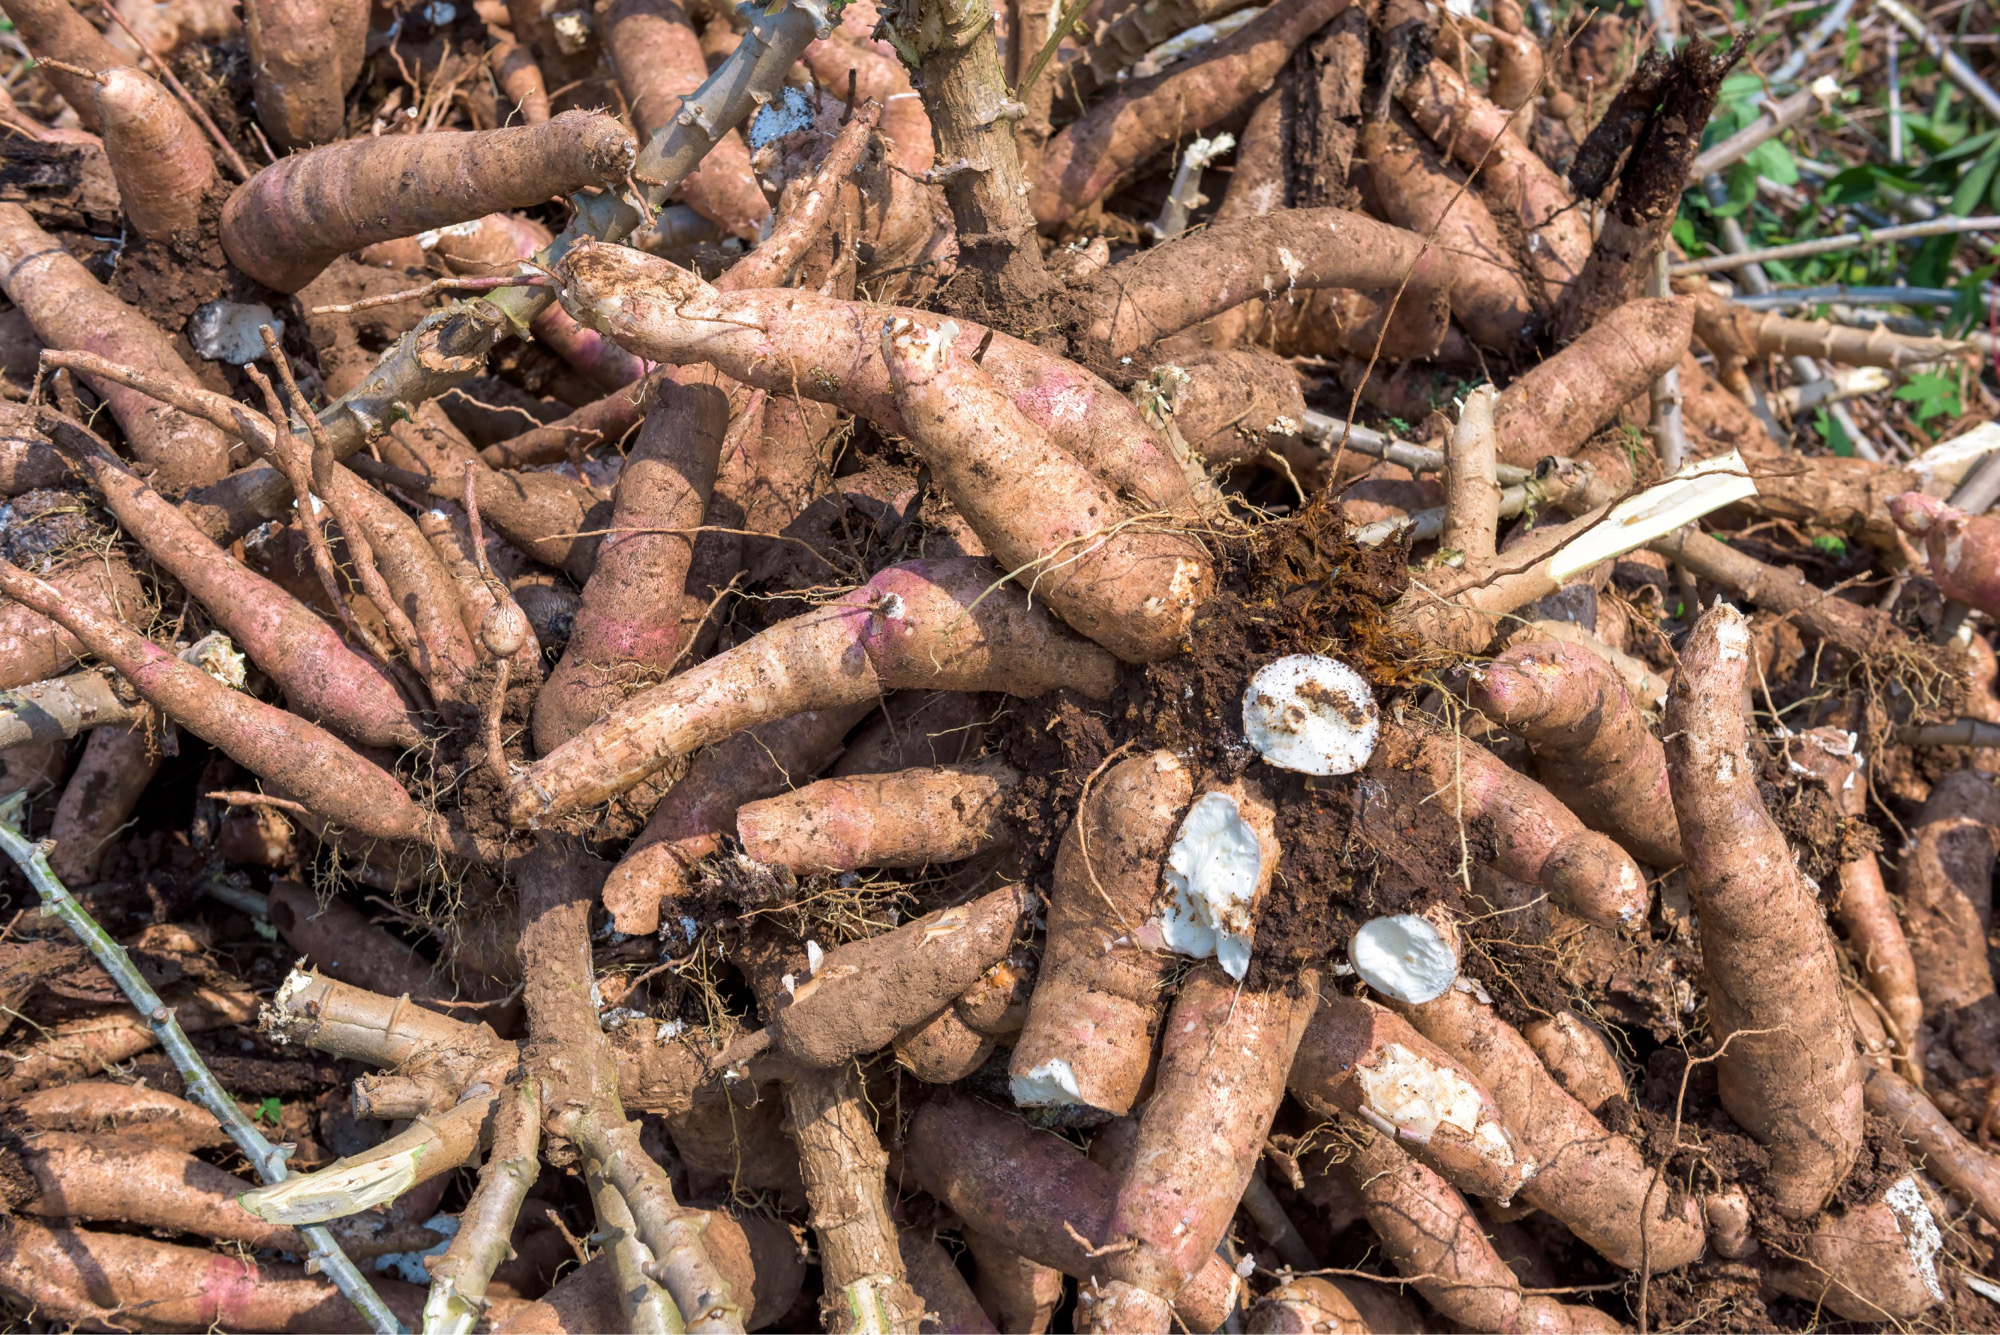 Organic cassava being grown at a farm